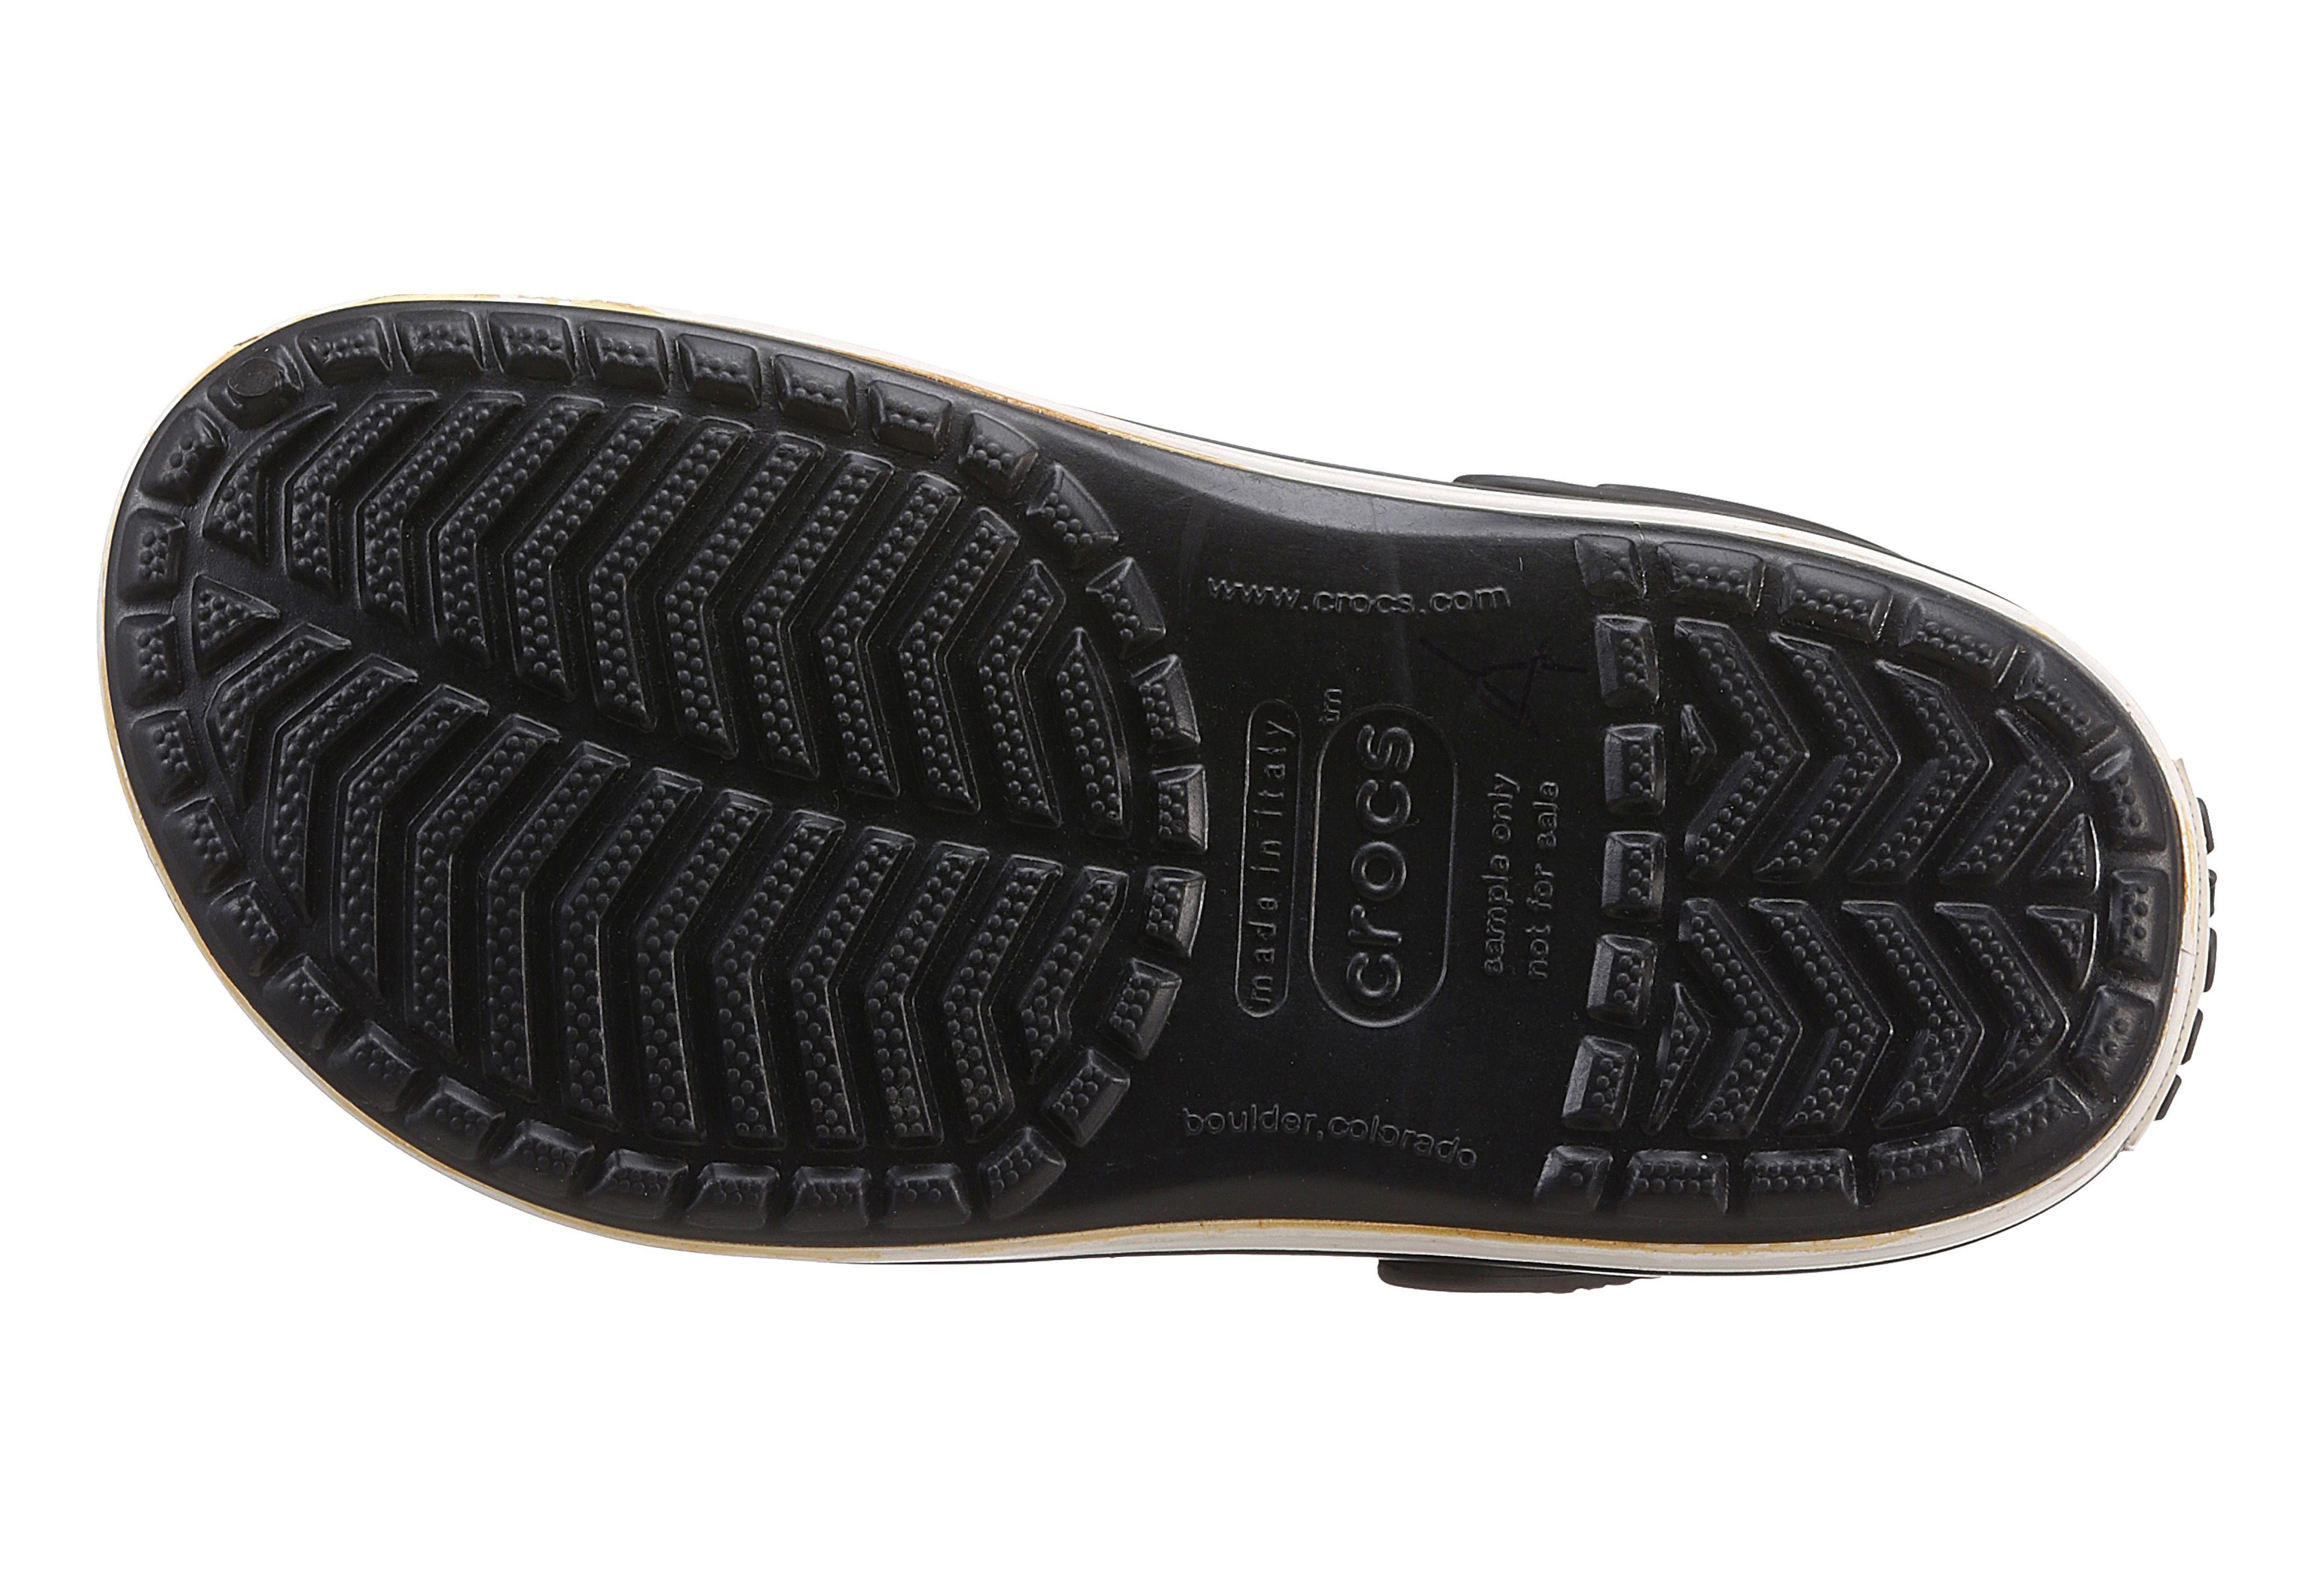 farbiger schwarz-weiß Clog Crocs Laufsohle mit Crocband